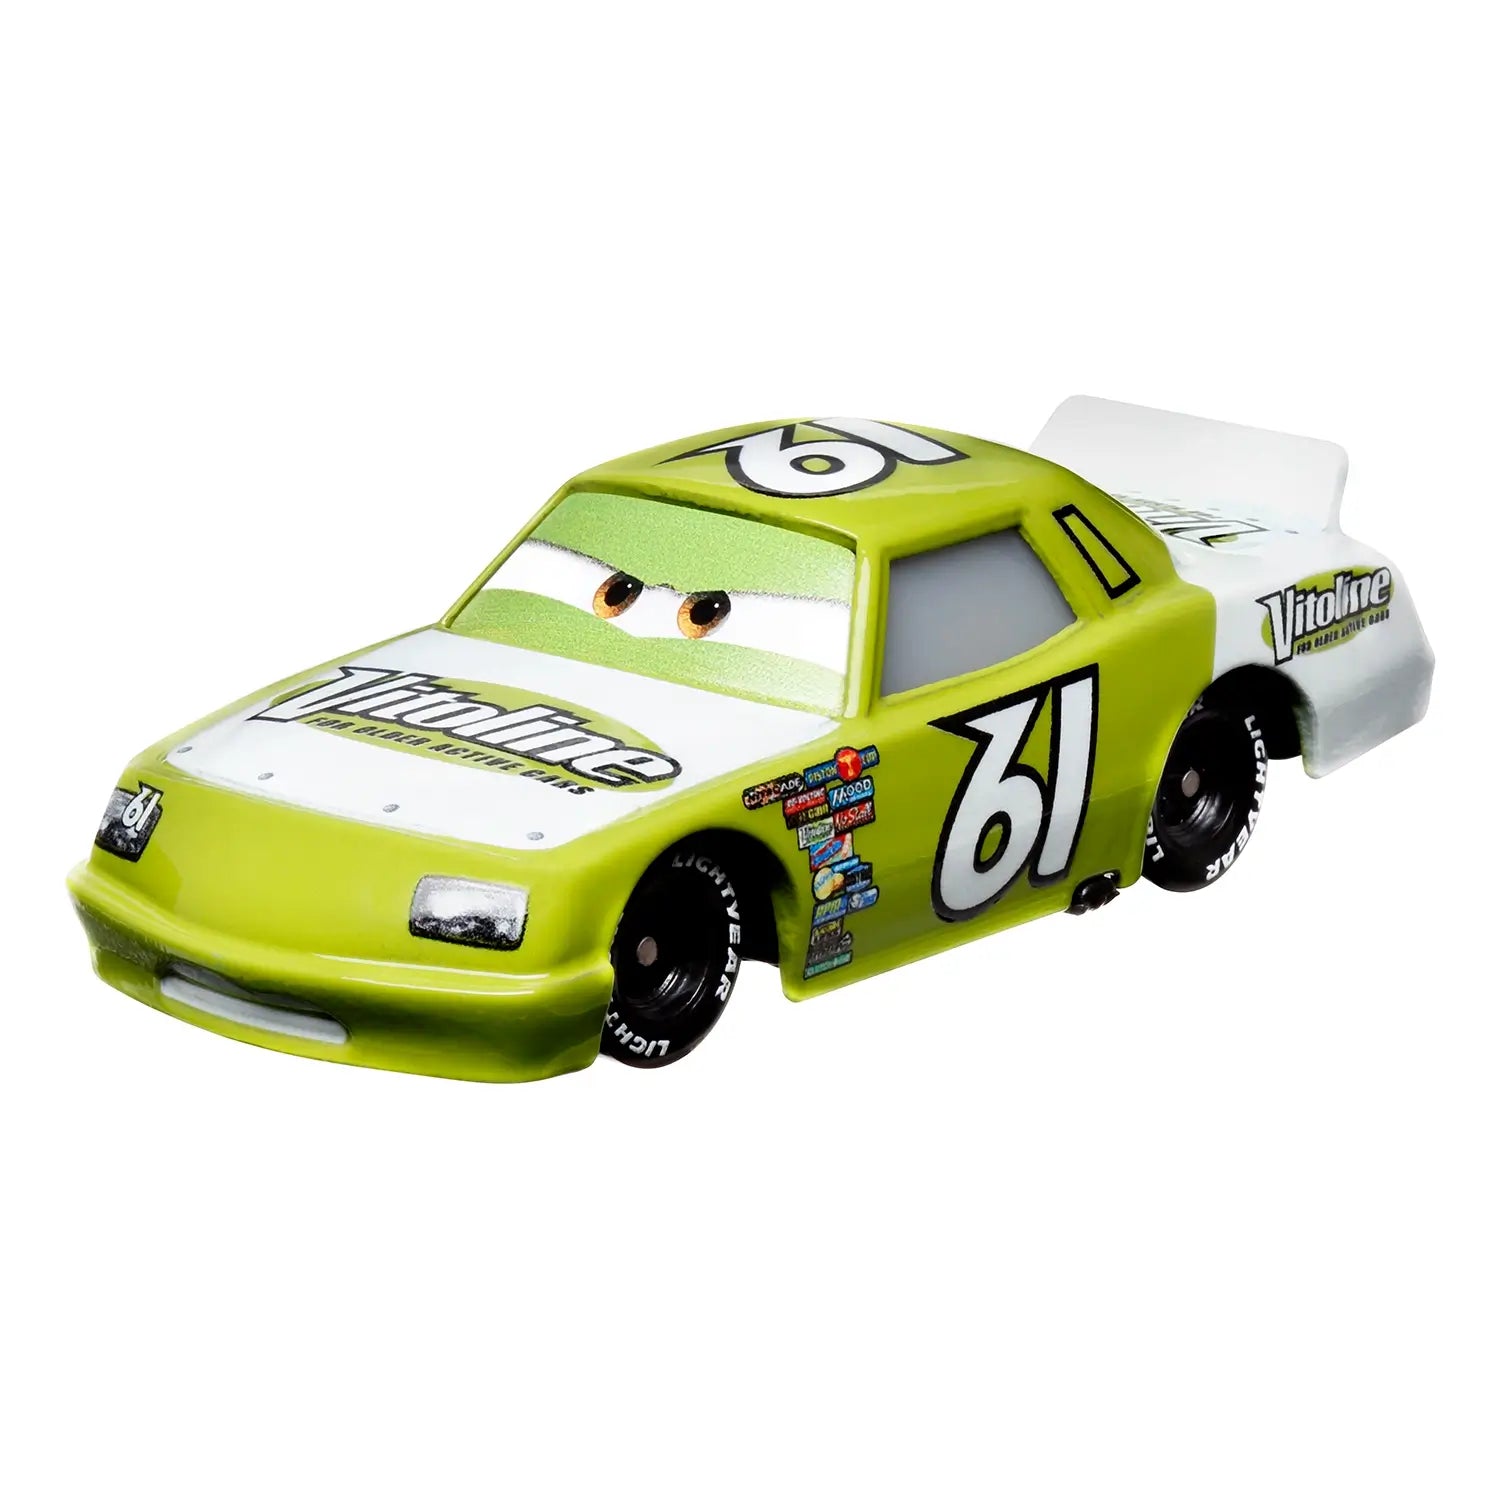 Disney Pixar Cars James Cleanair Diecast Vehicle